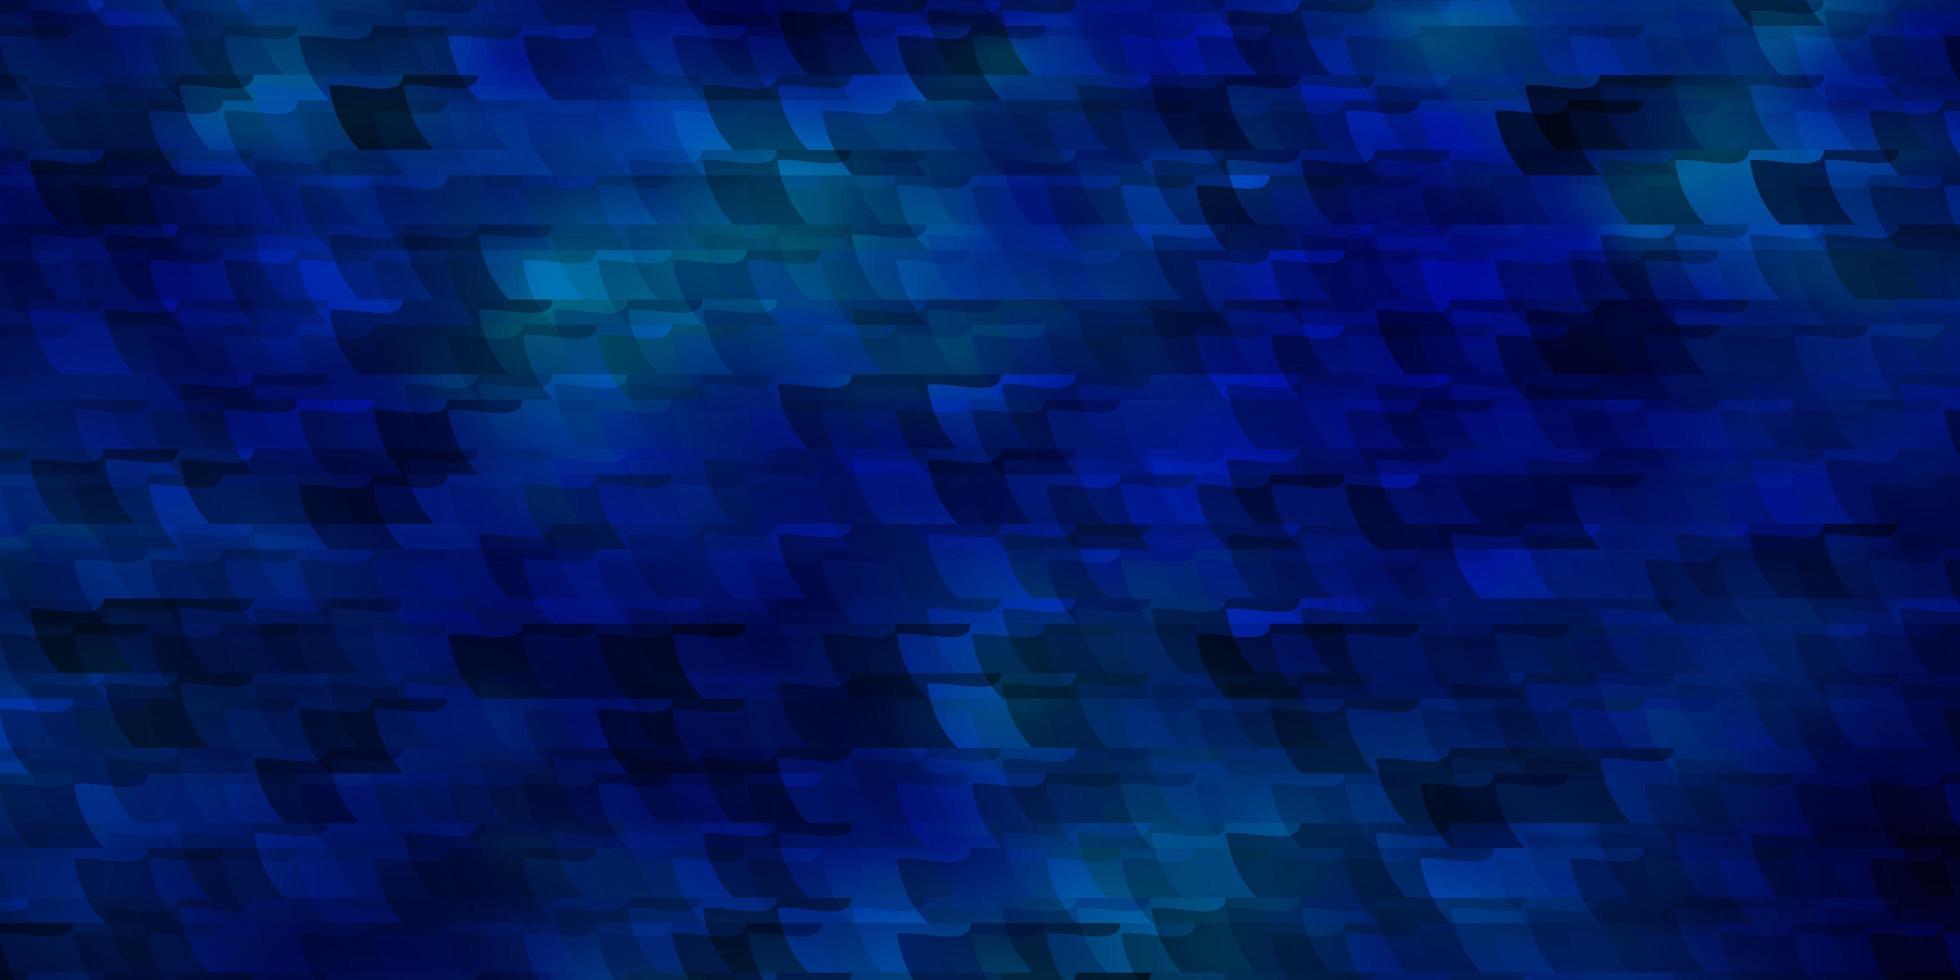 mörkrosa, blå vektorbakgrund i polygonal stil. vektor